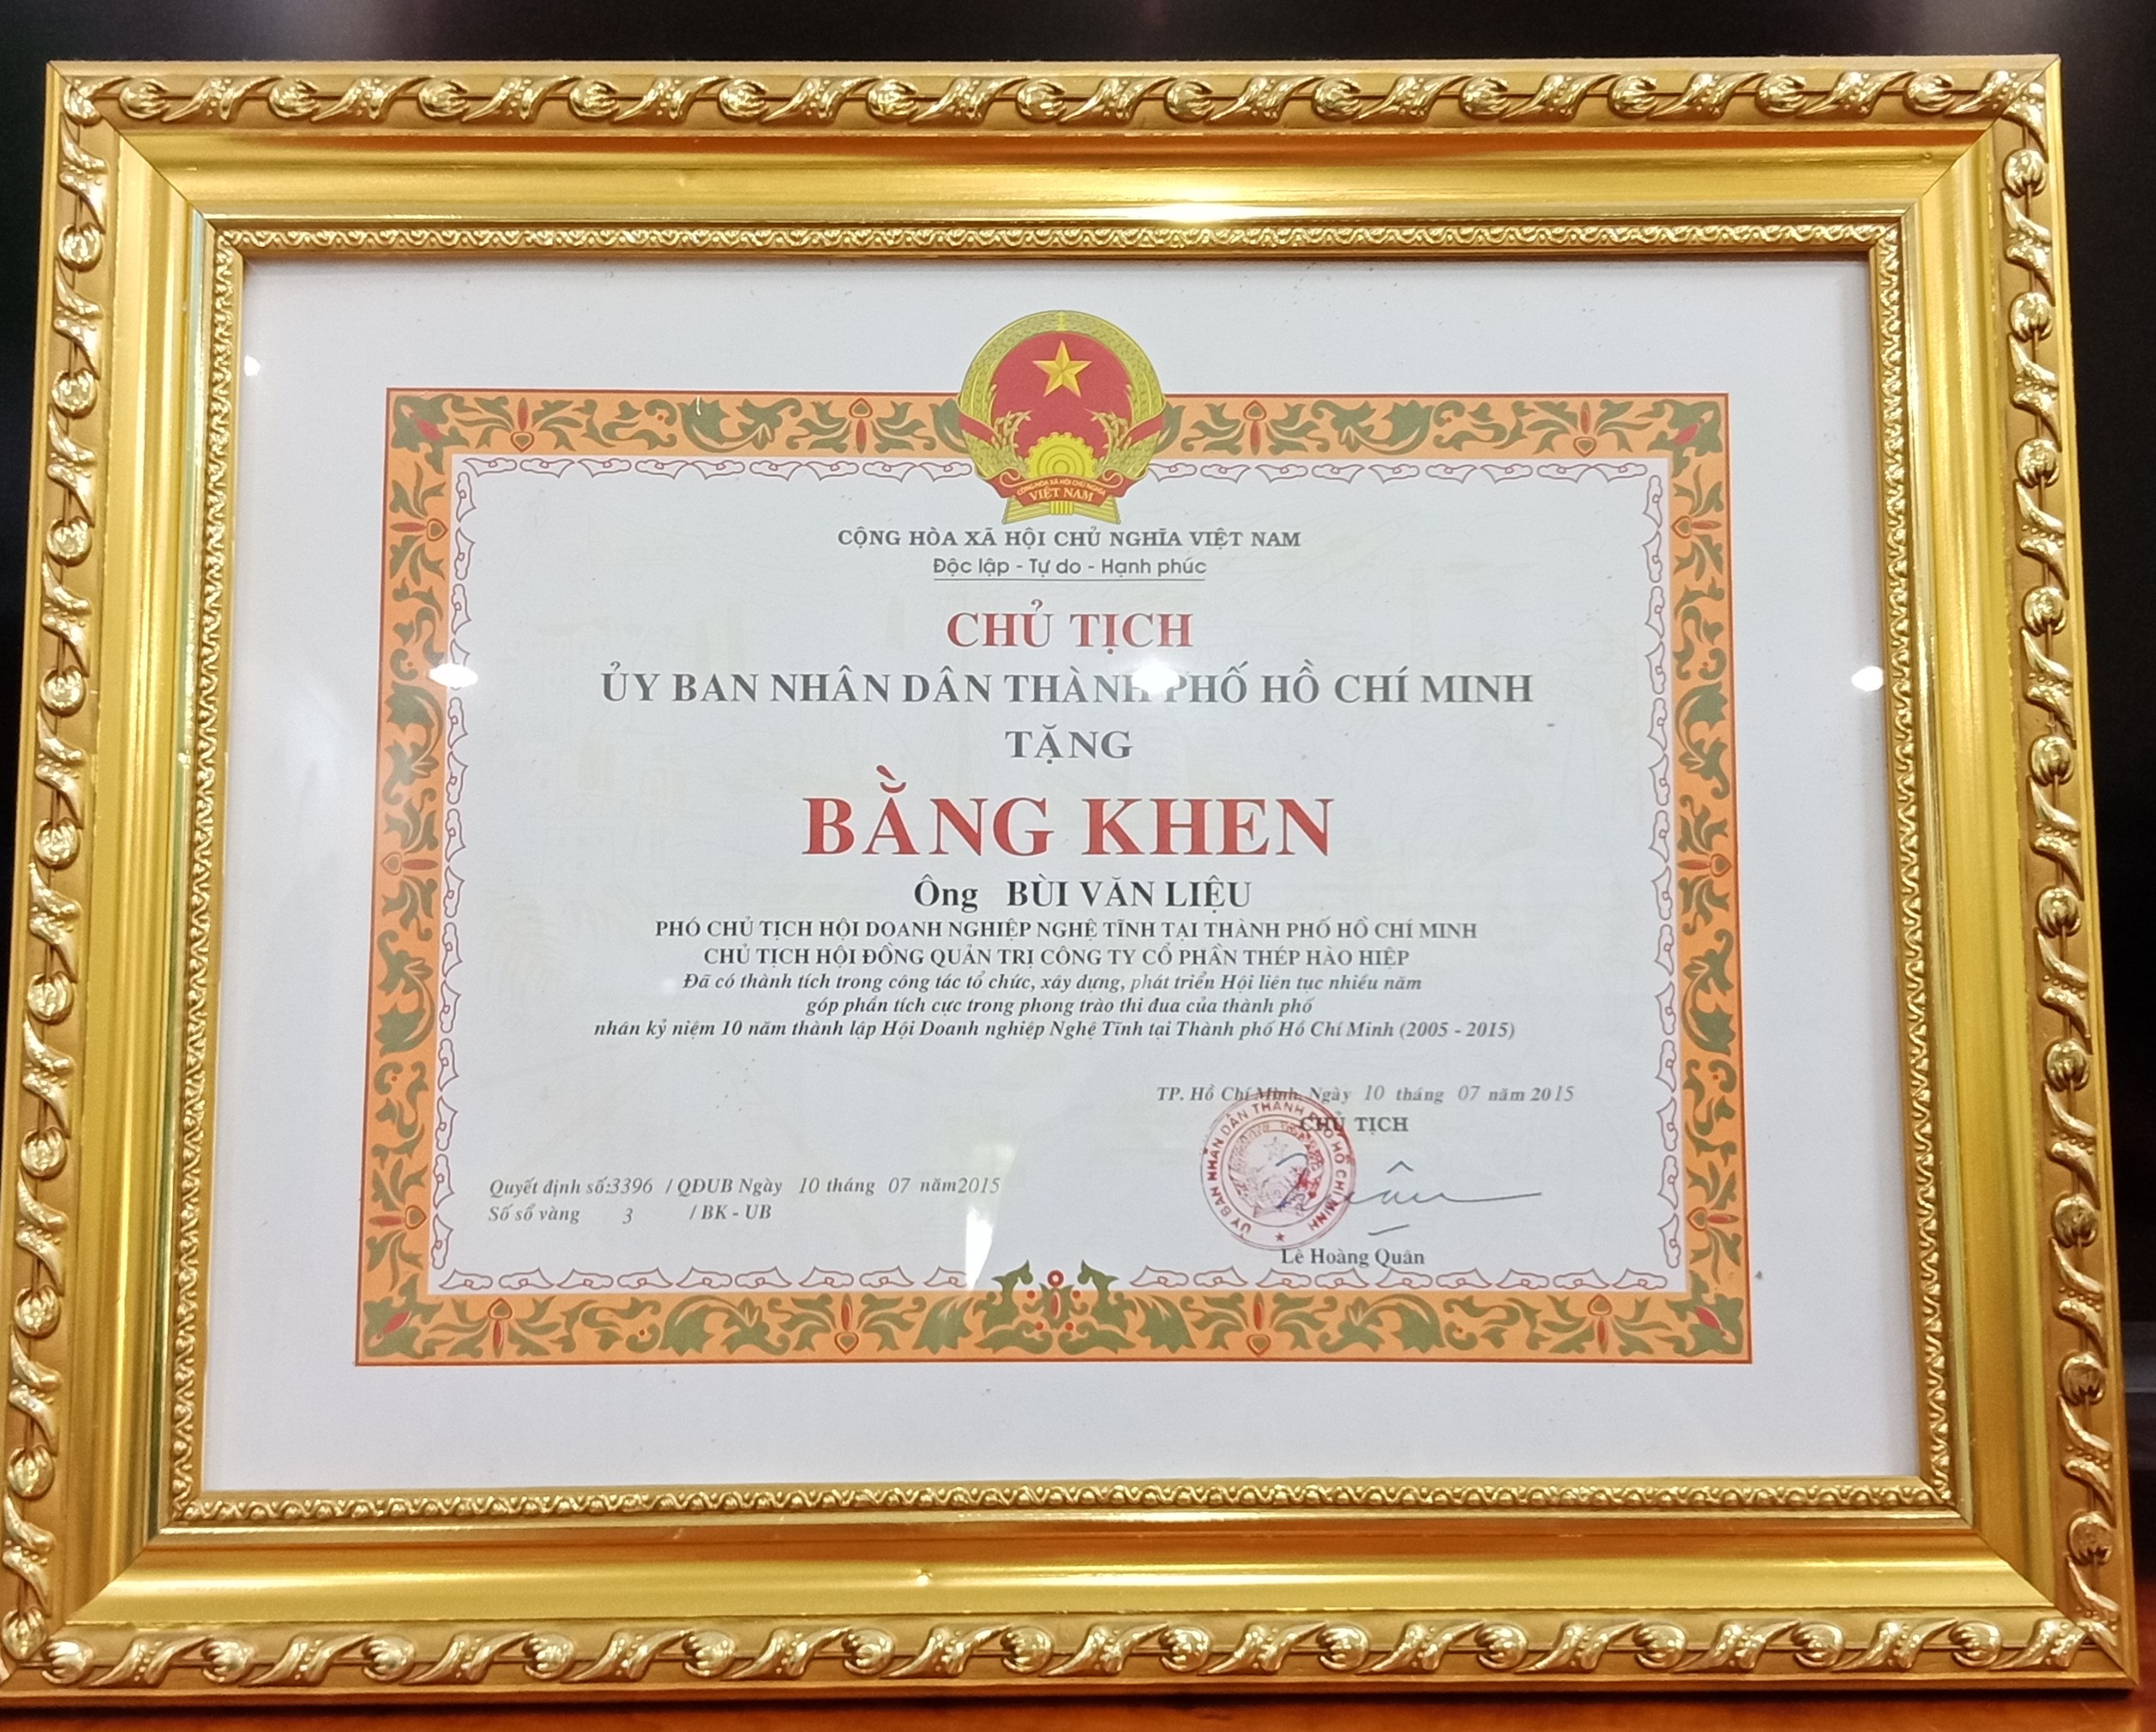 Công ty Hào Hiệp được nhận bằng khen từ UBND TP HCM